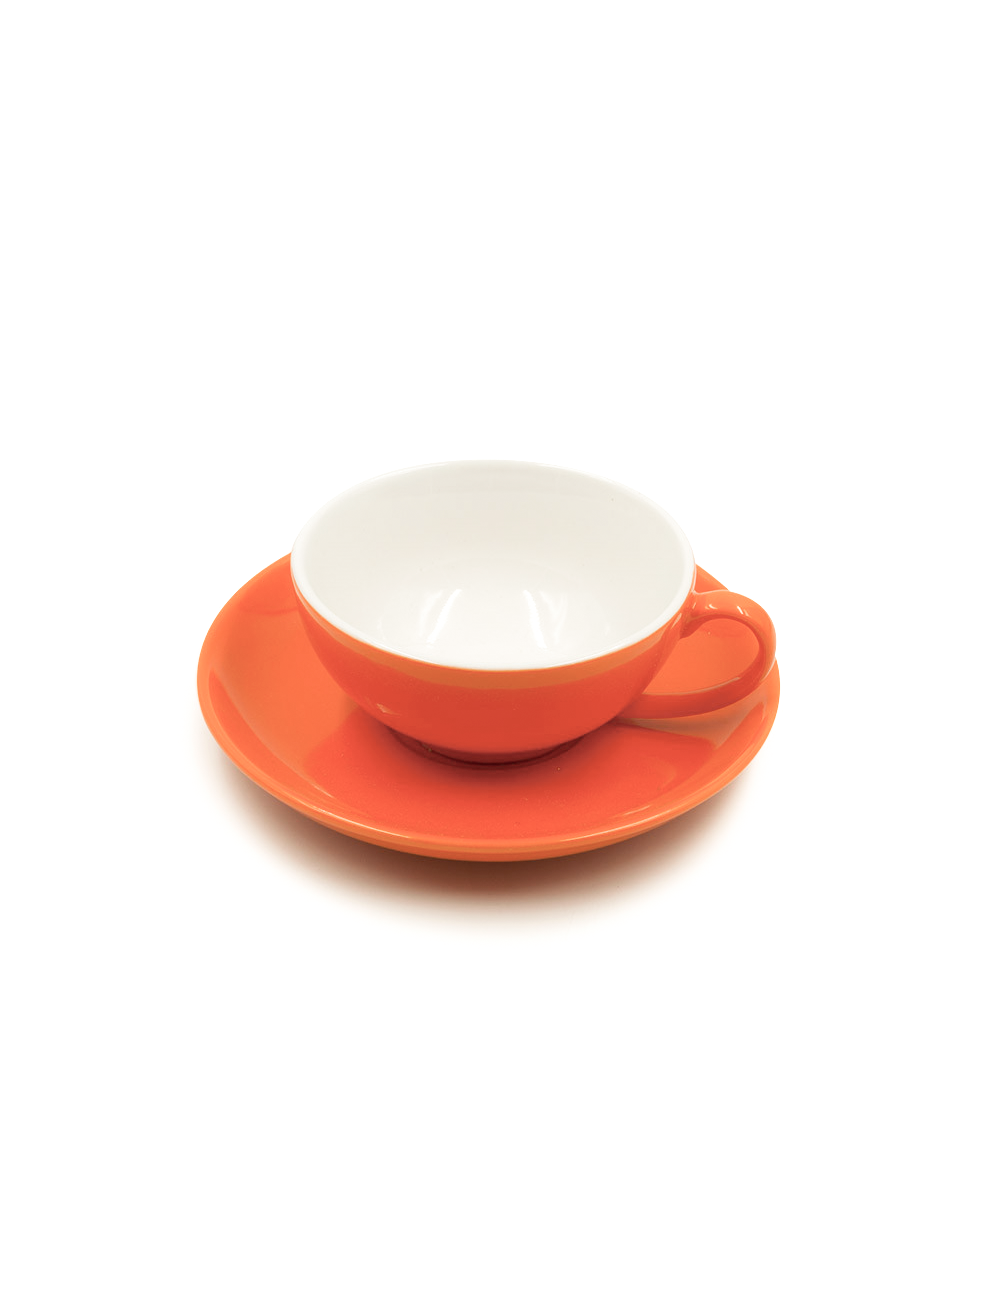 Tazza da tè Color in porcellana arancio da 160 ml - La Pianta del Tè shop on line